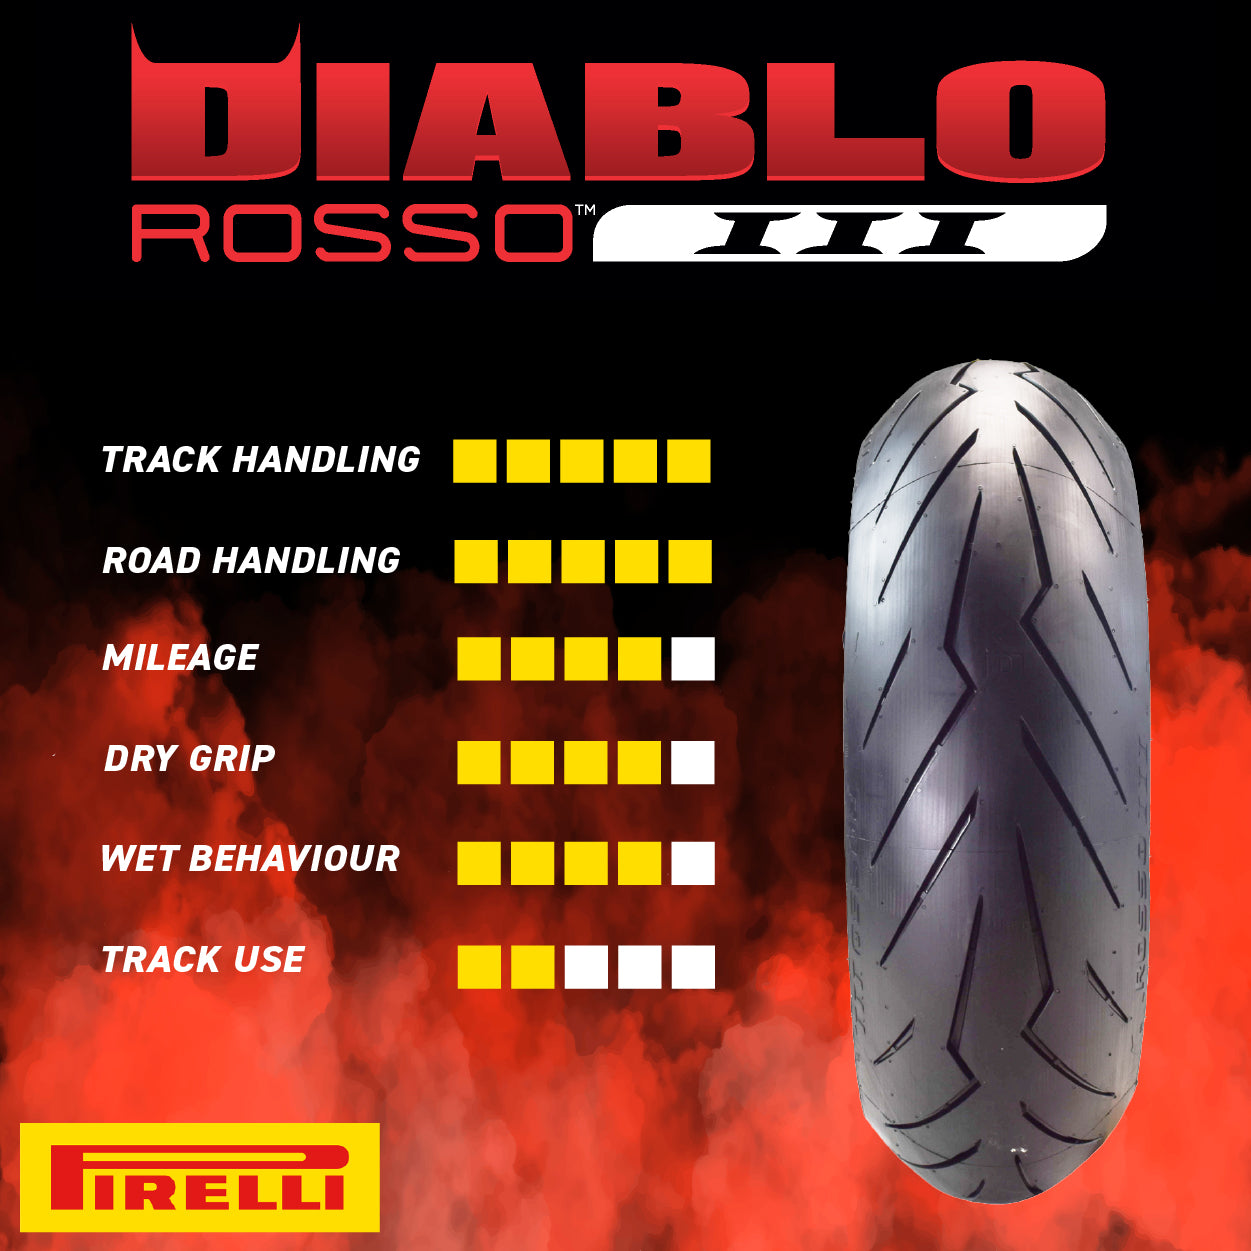 Pirelli Diablo Rosso III 110/70ZR17 200/55ZR17 Front & Rear Motorcycle Tire Set